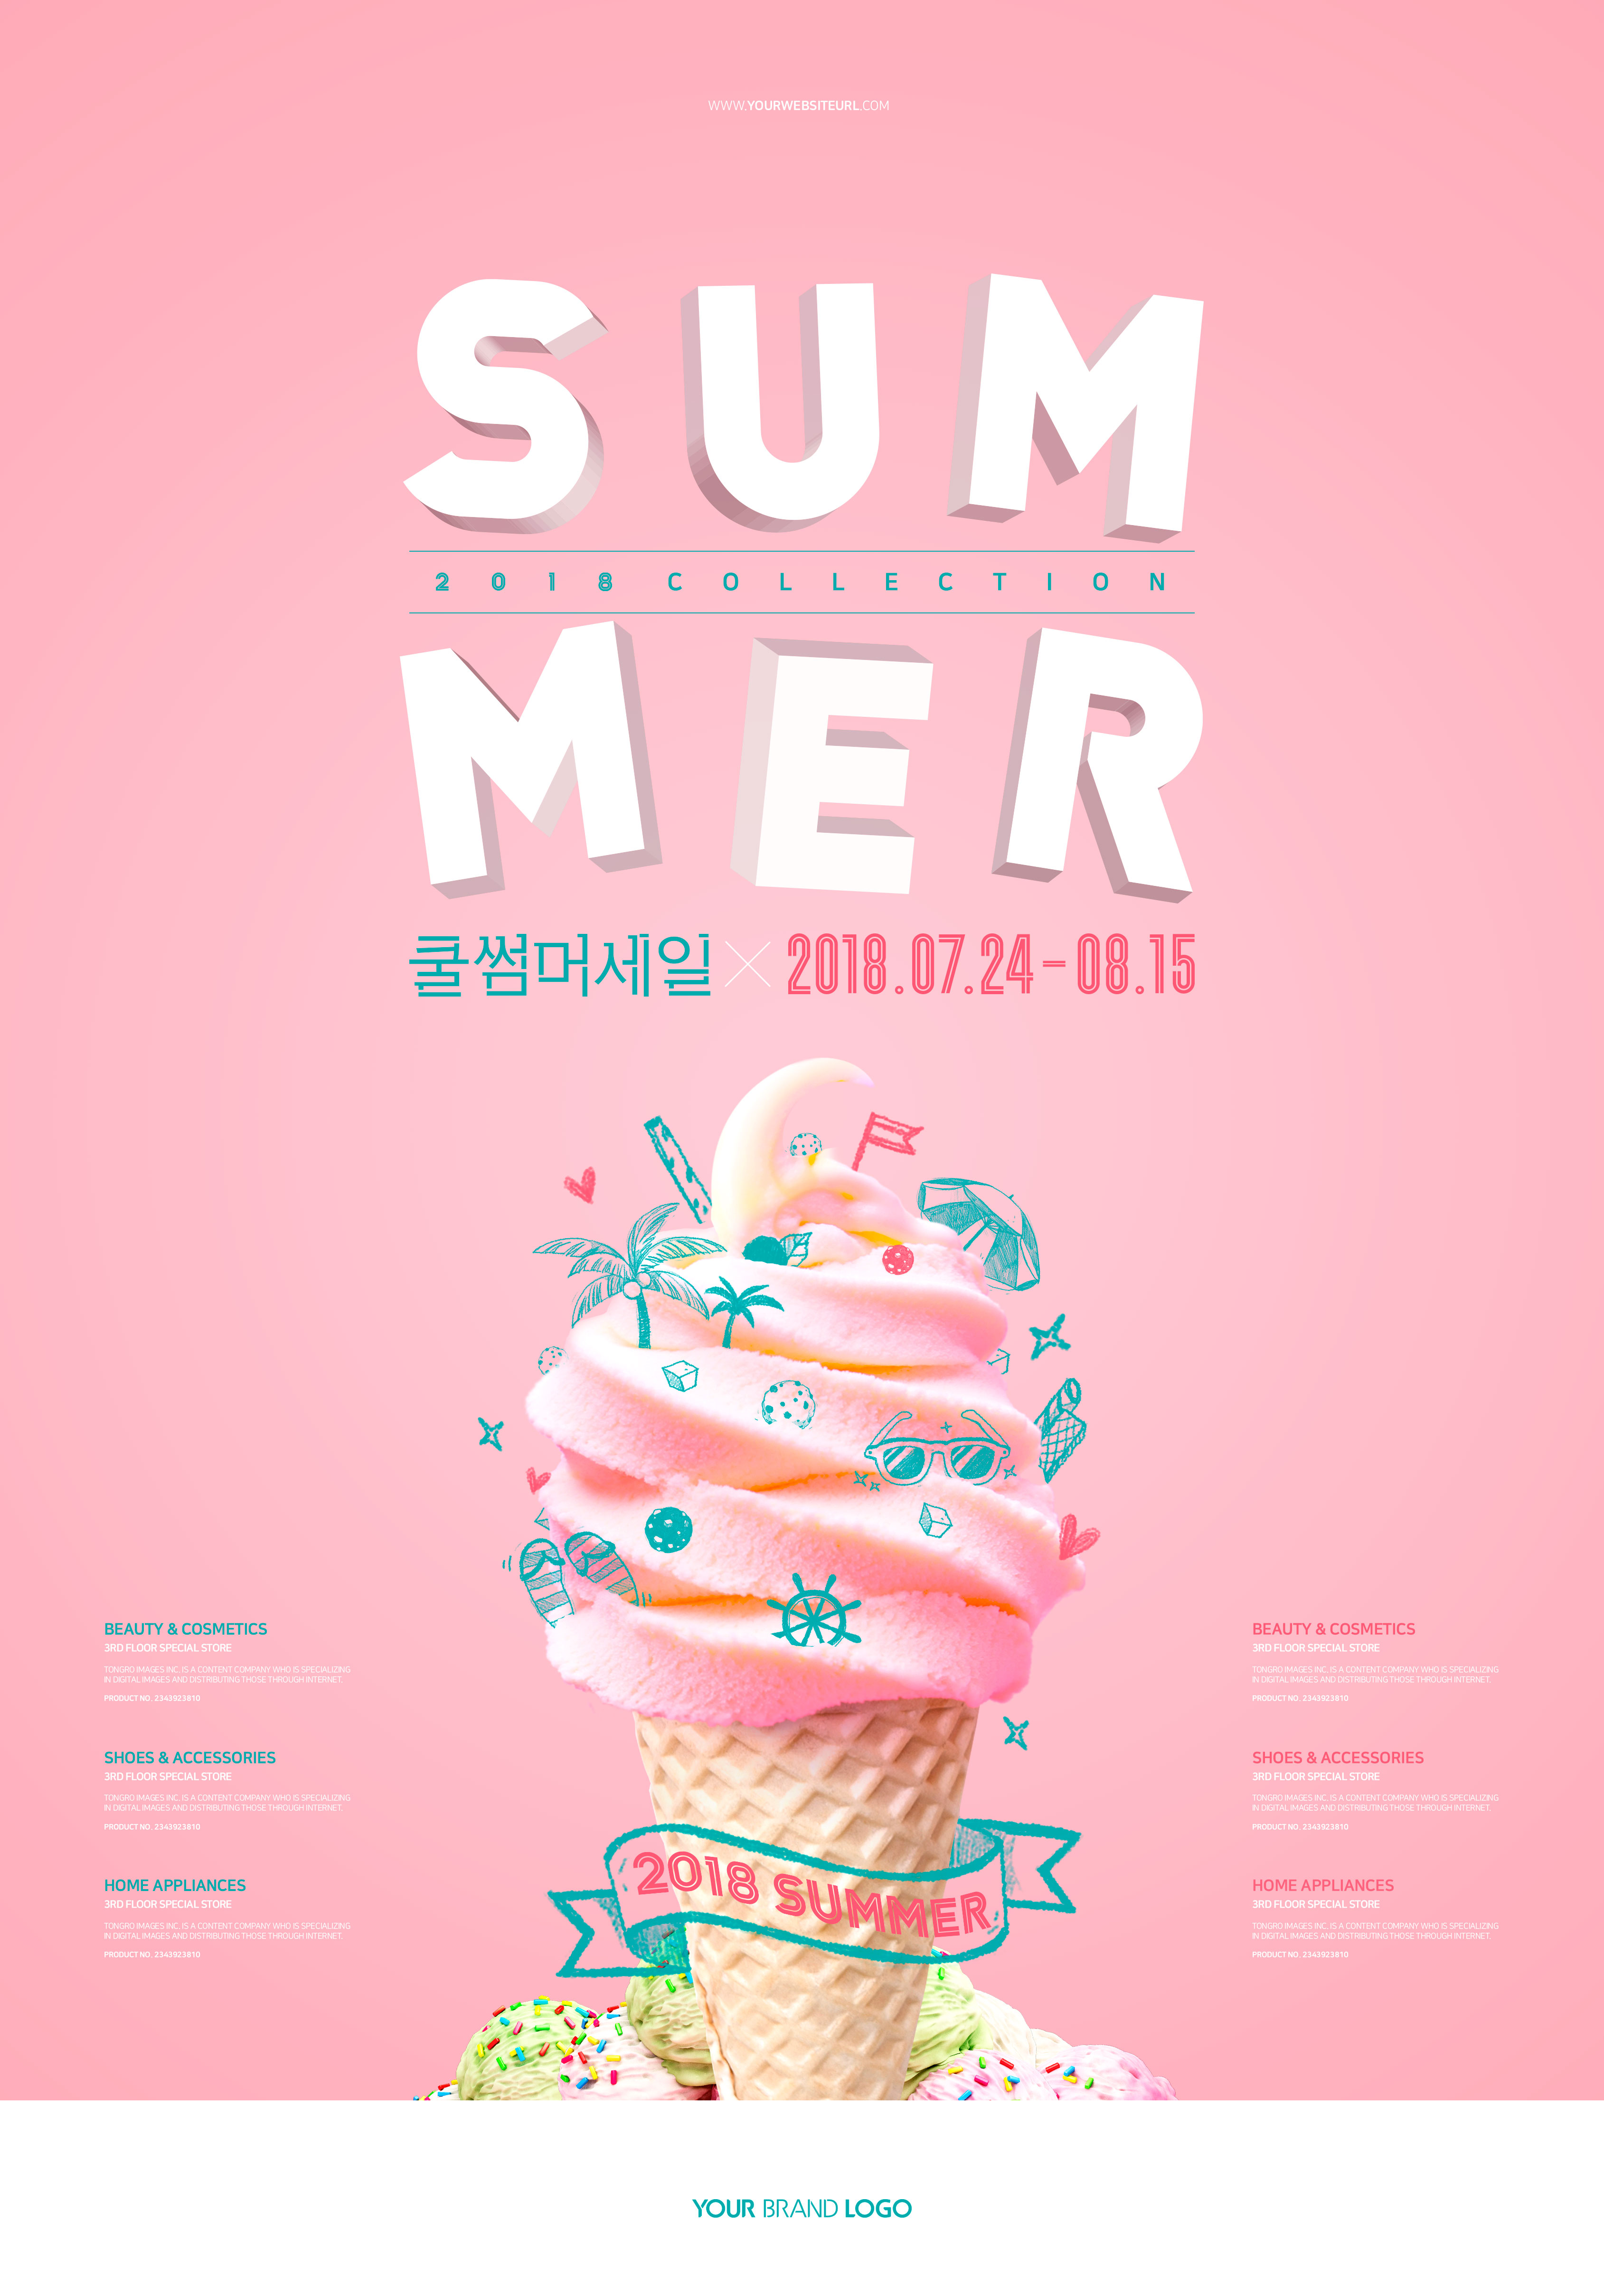 暑假应季活动折扣促销海报设计素材插图(2)